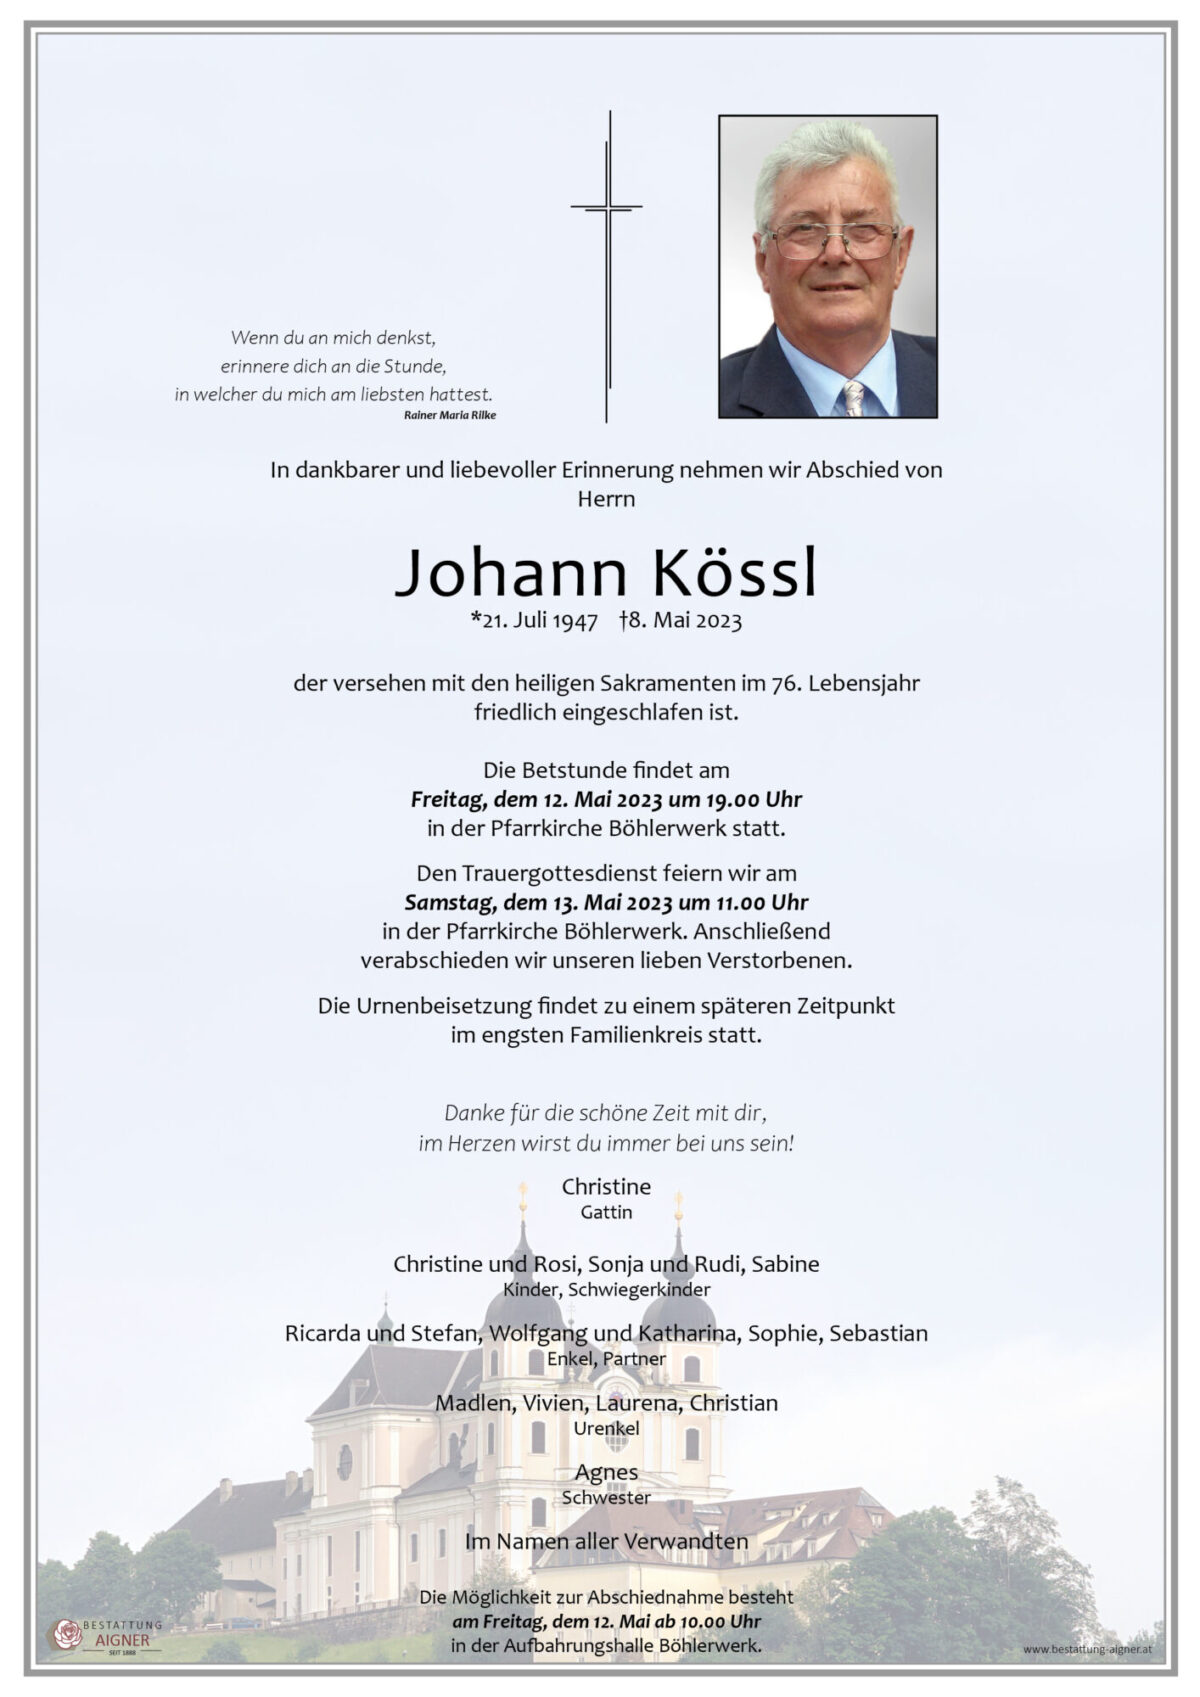 Johann Kössl